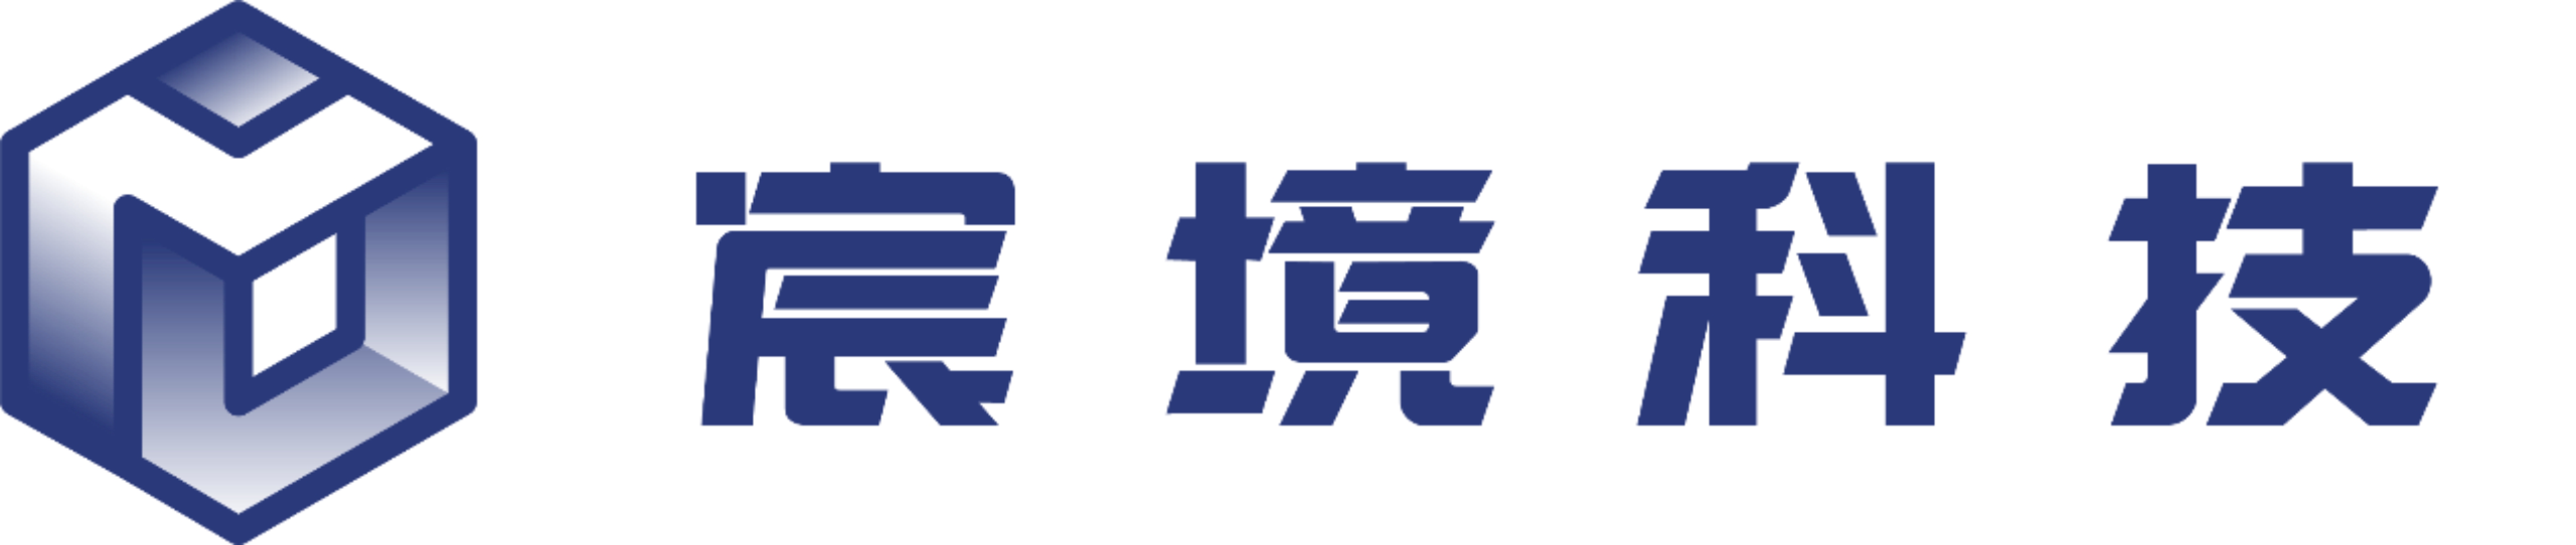 logo-chinese.jpeg